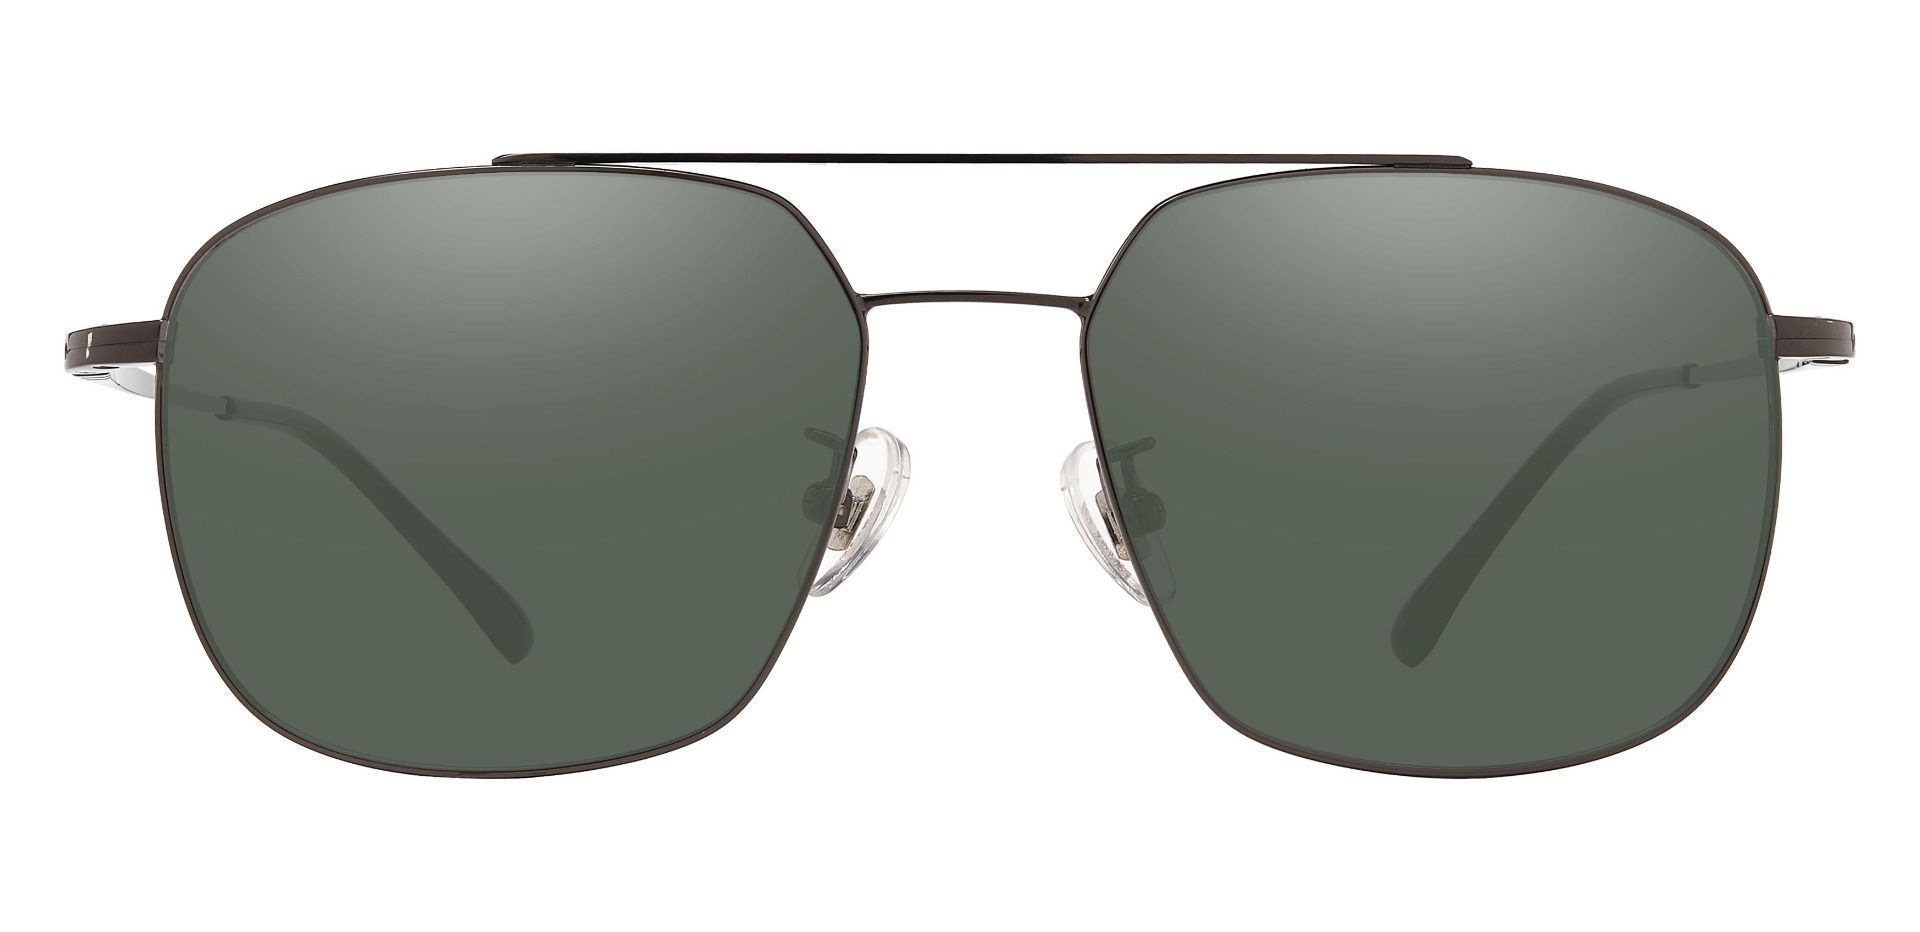 Trevor Aviator Reading Sunglasses - Gray Frame With Green Lenses